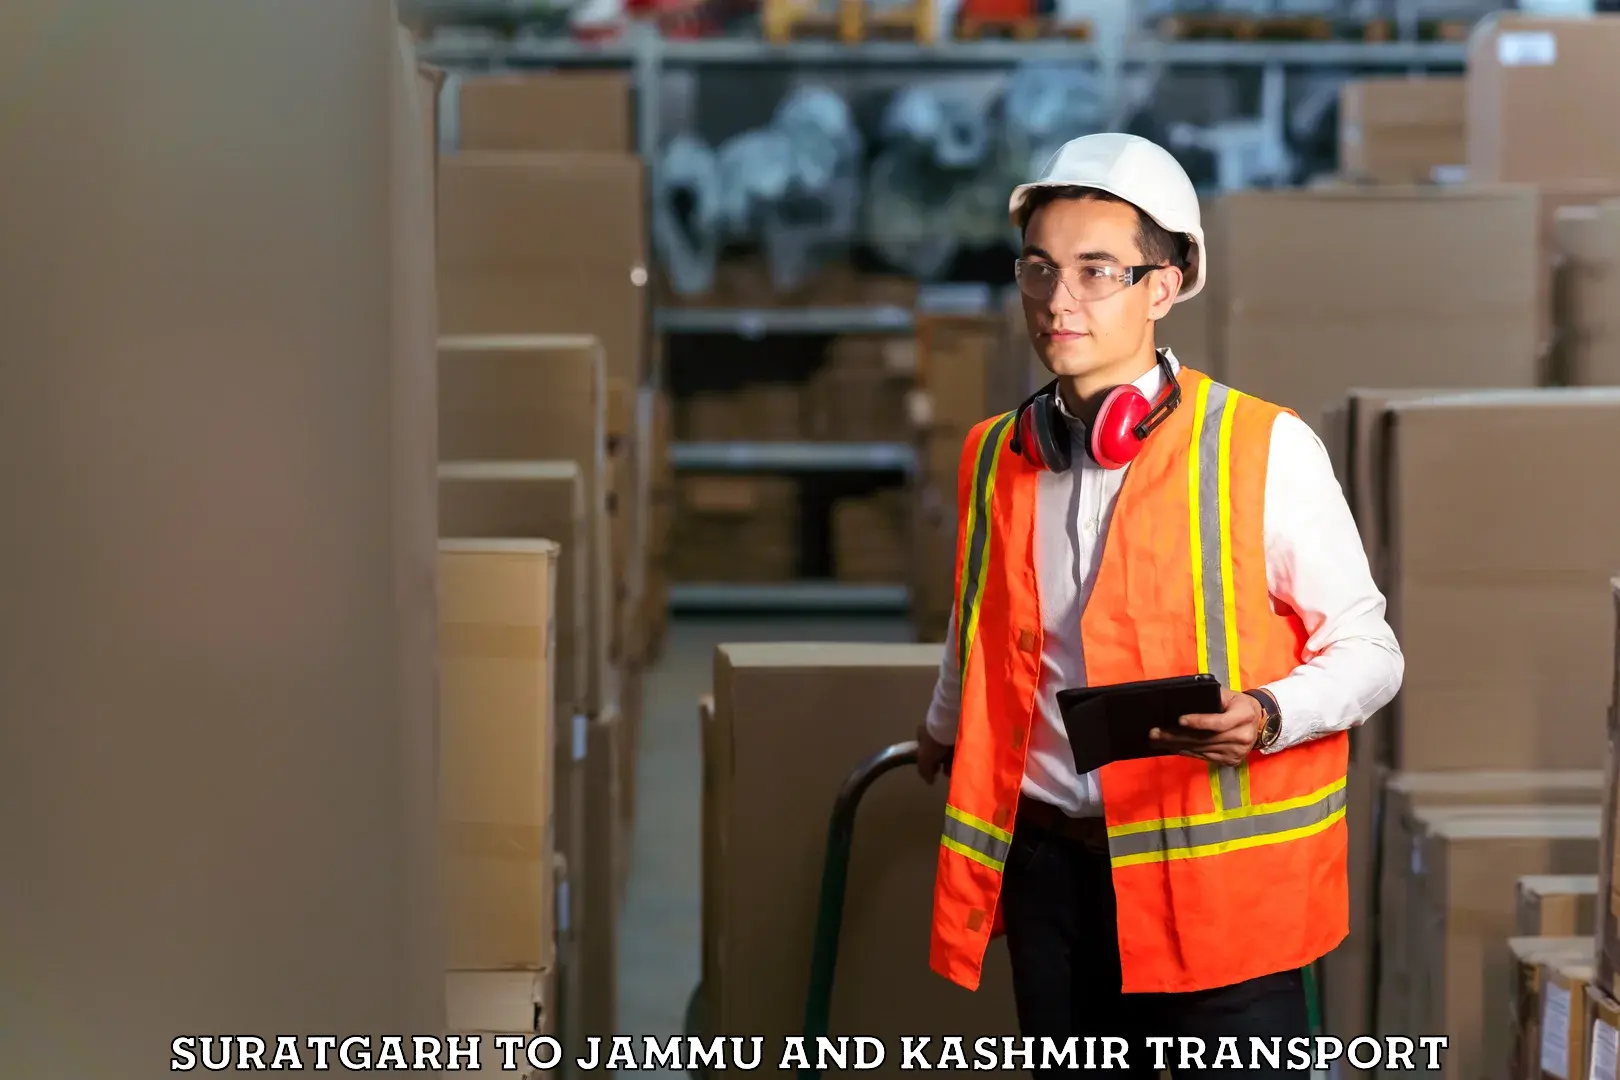 Door to door transport services Suratgarh to Jammu and Kashmir